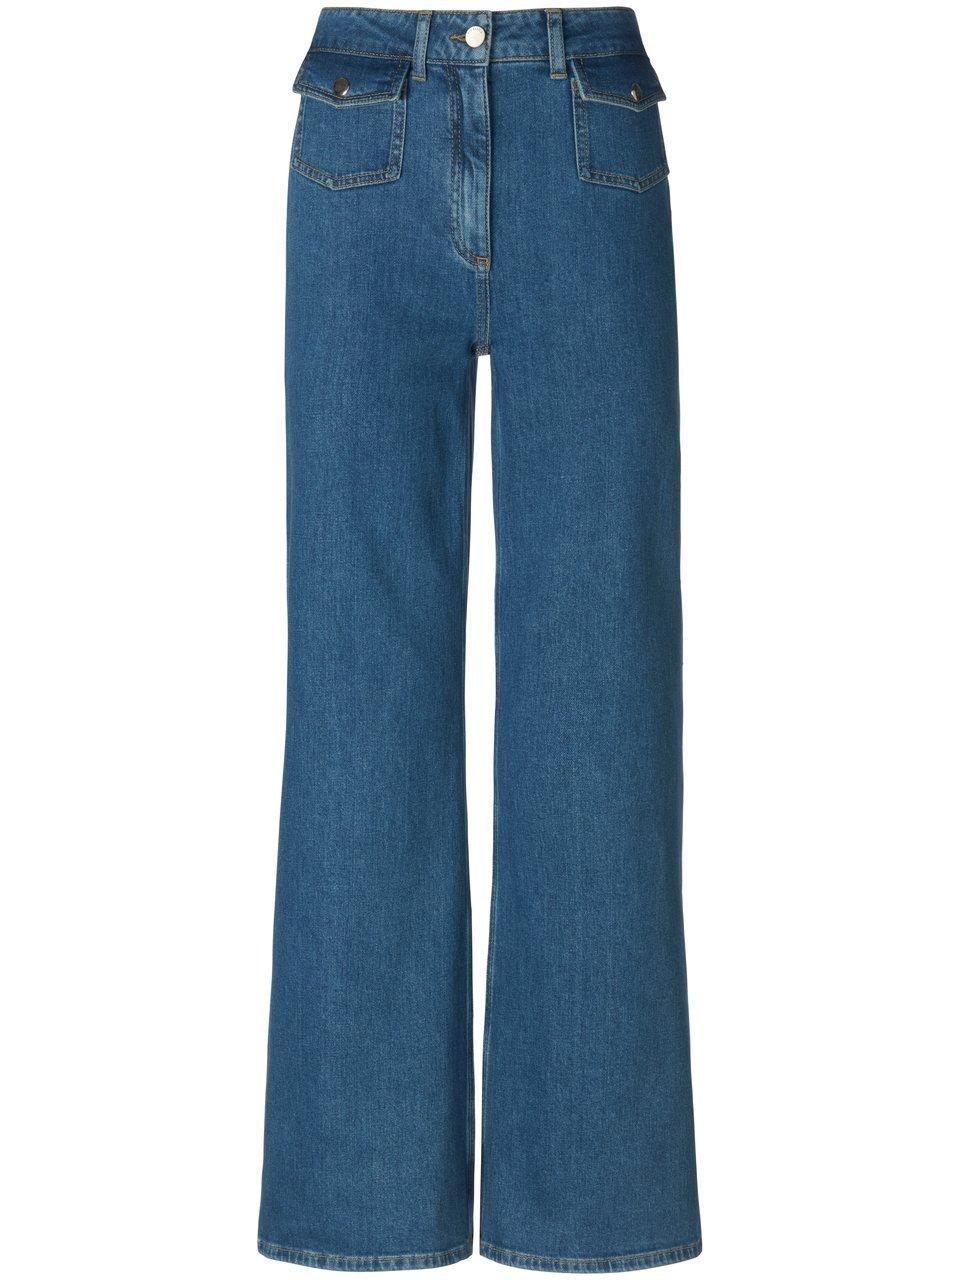 Jeans in jaren 70-stijl Van Uta Raasch blauw